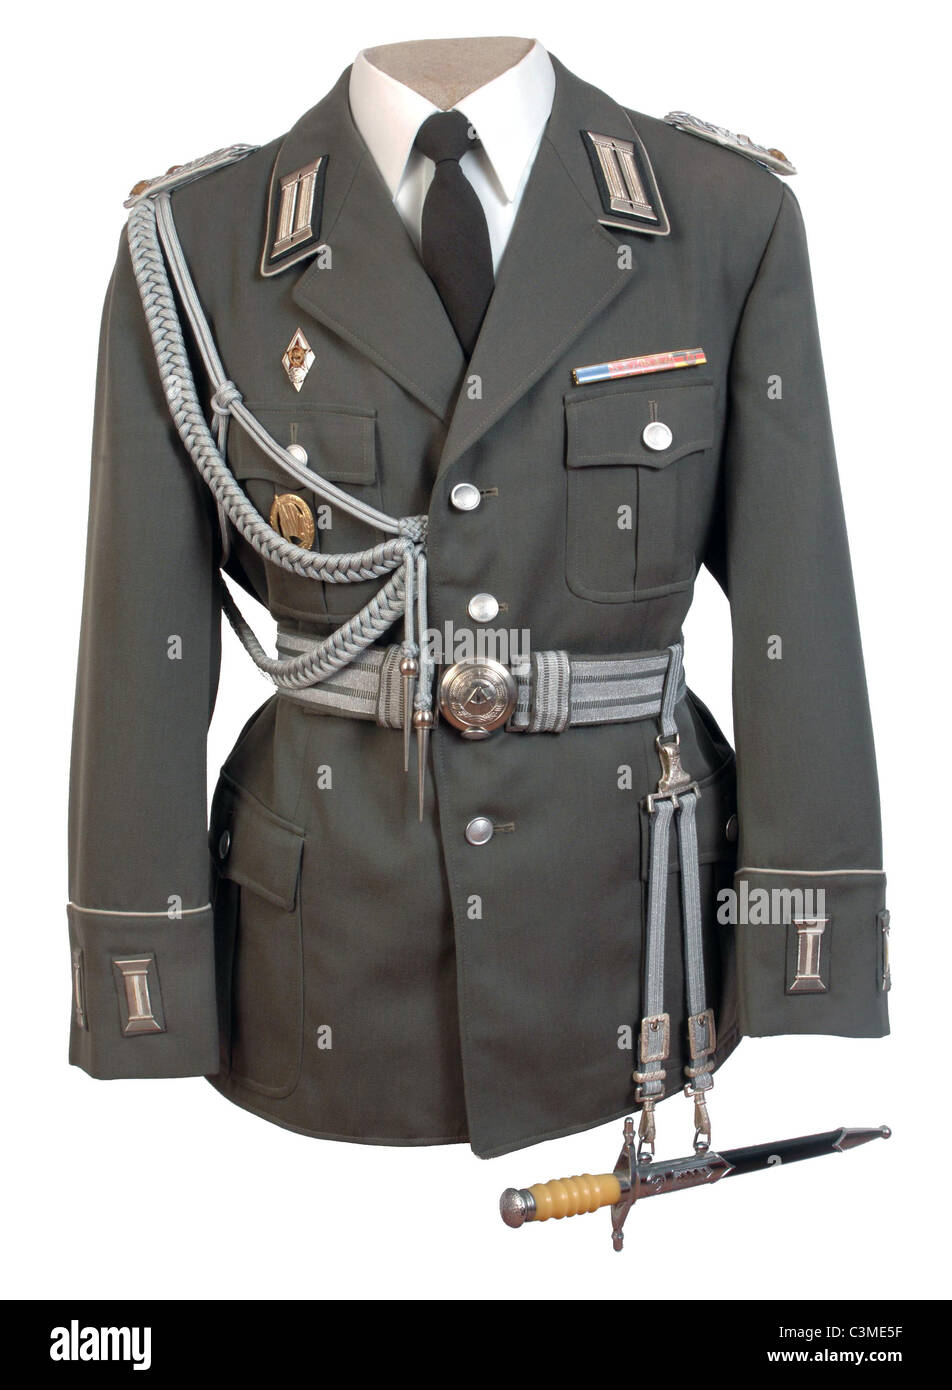 Alemania oriental oficiales del ejército nacional del pueblo deber túnica. NVA. DDR Foto de stock